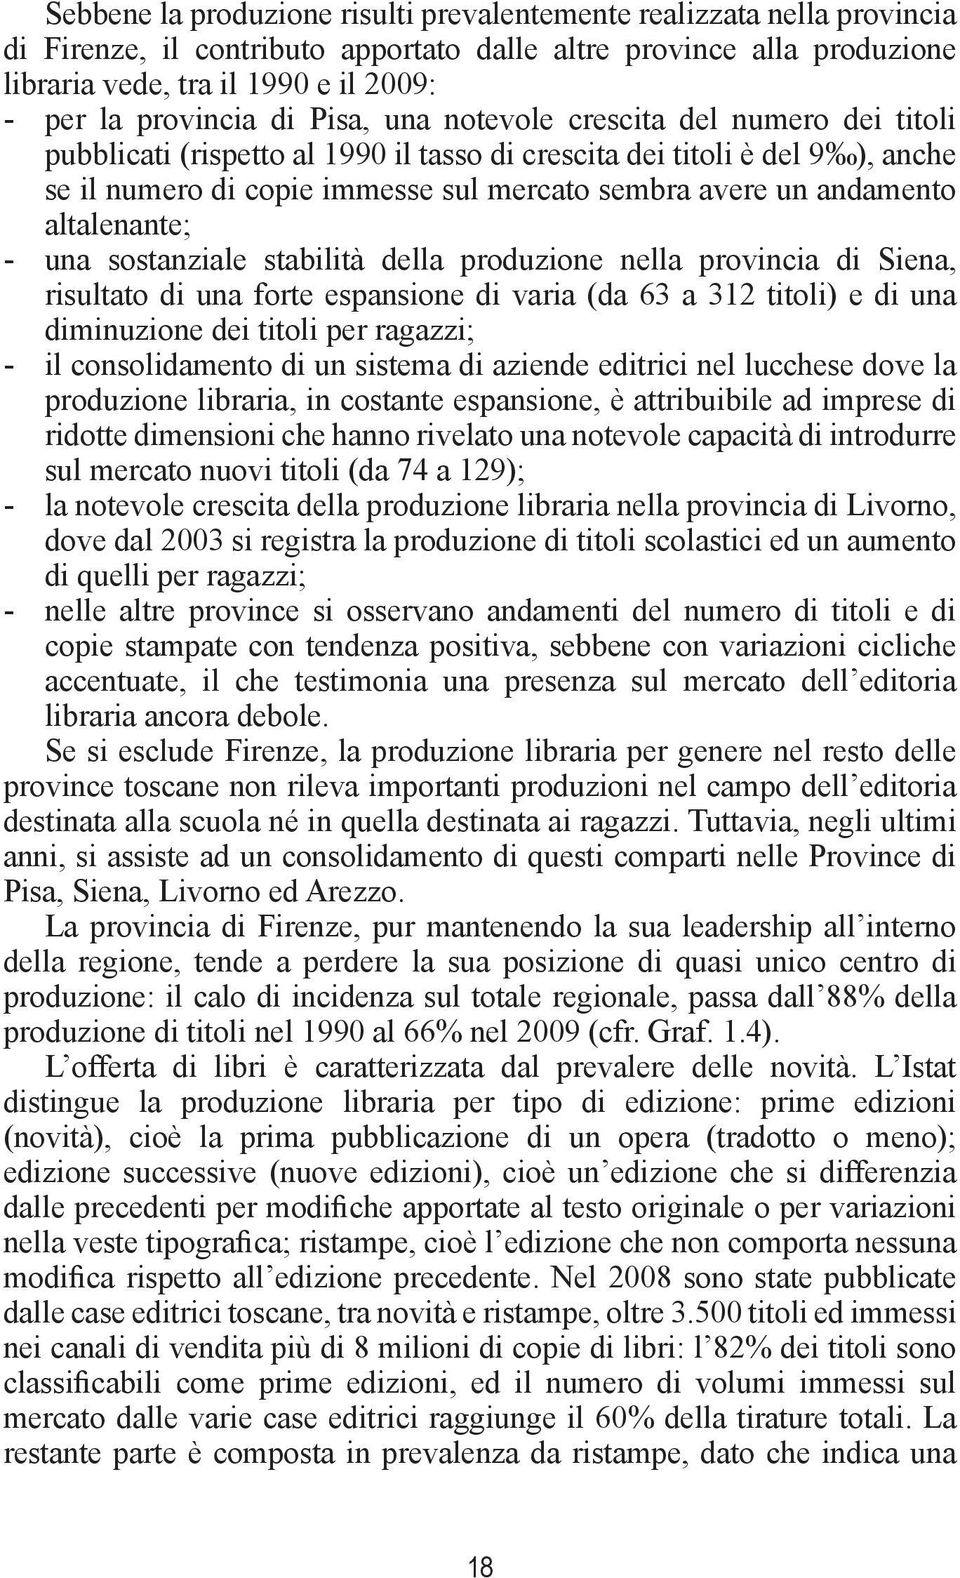 andamento altalenante; -- una sostanziale stabilità della produzione nella provincia di Siena, risultato di una forte espansione di varia (da 63 a 312 titoli) e di una diminuzione dei titoli per